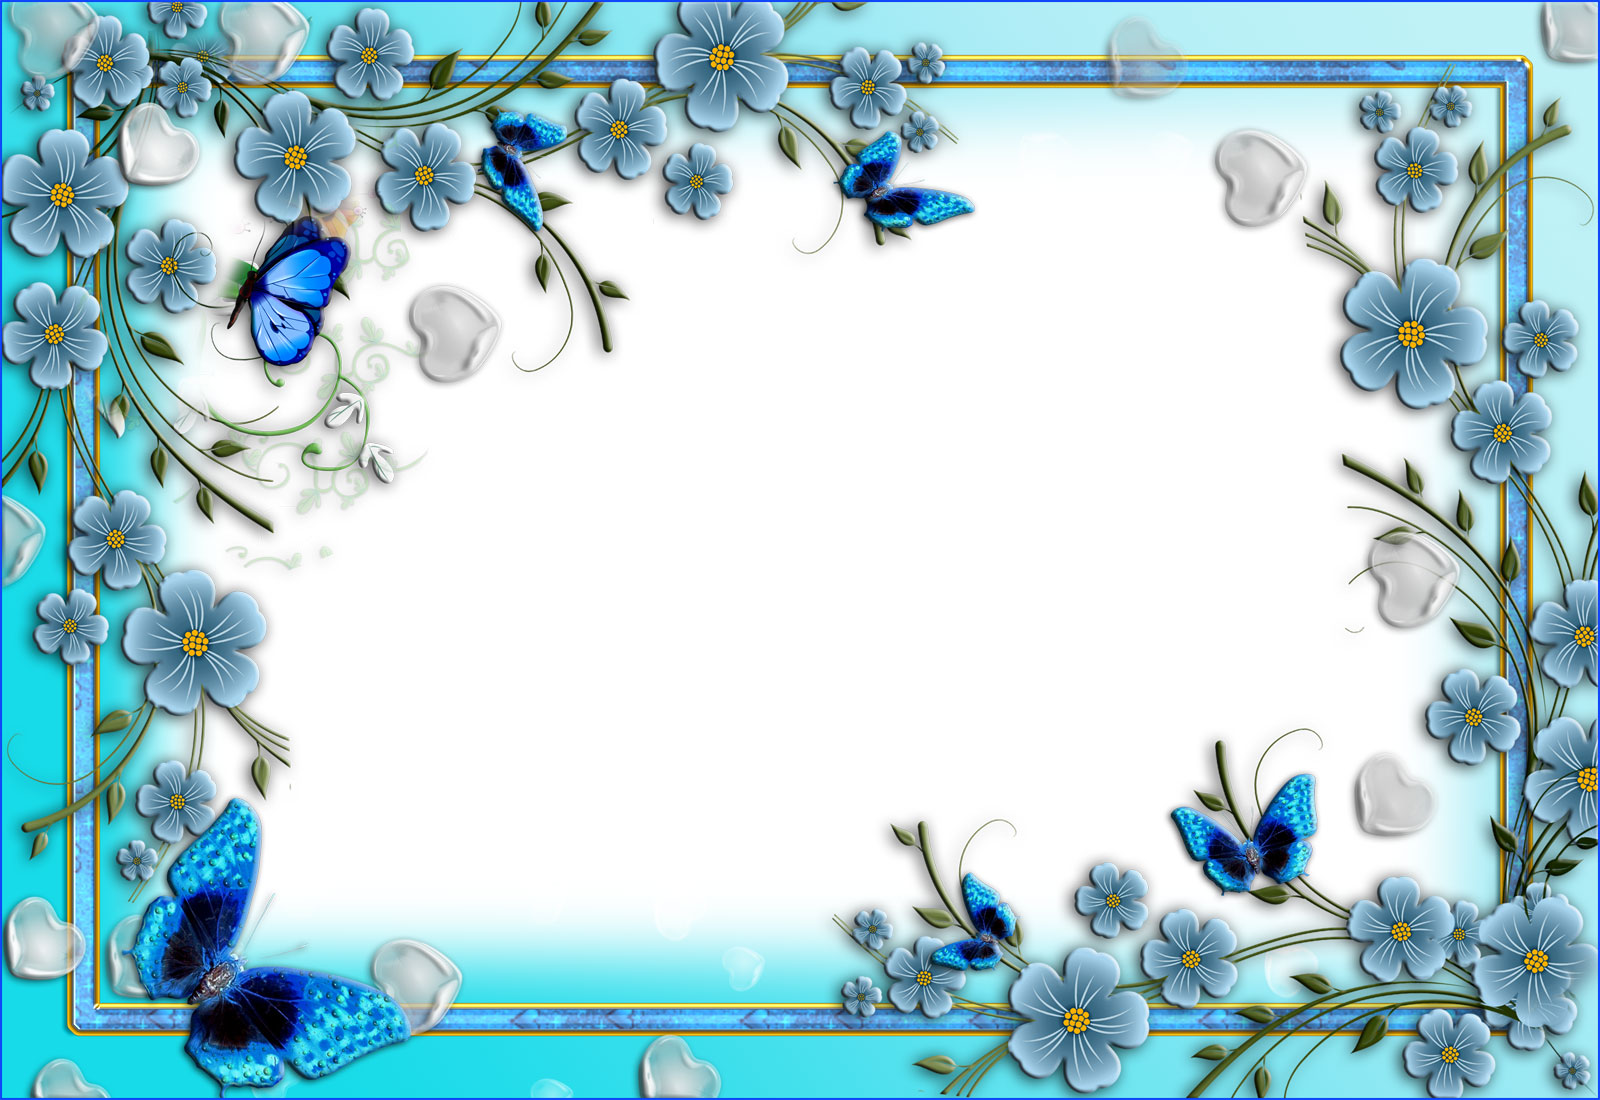 花のイラスト フリー素材 フレーム枠no 653 青い花と蝶